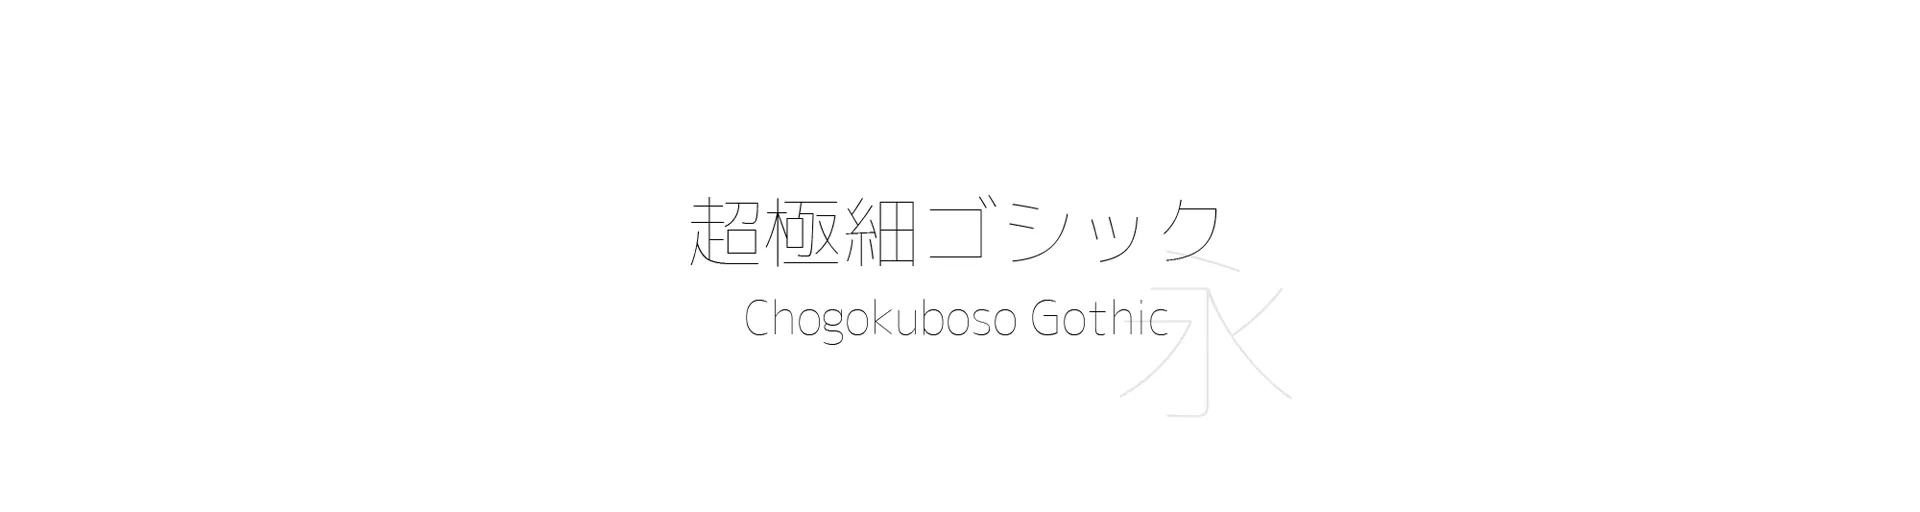 Chogokuboso Gothic